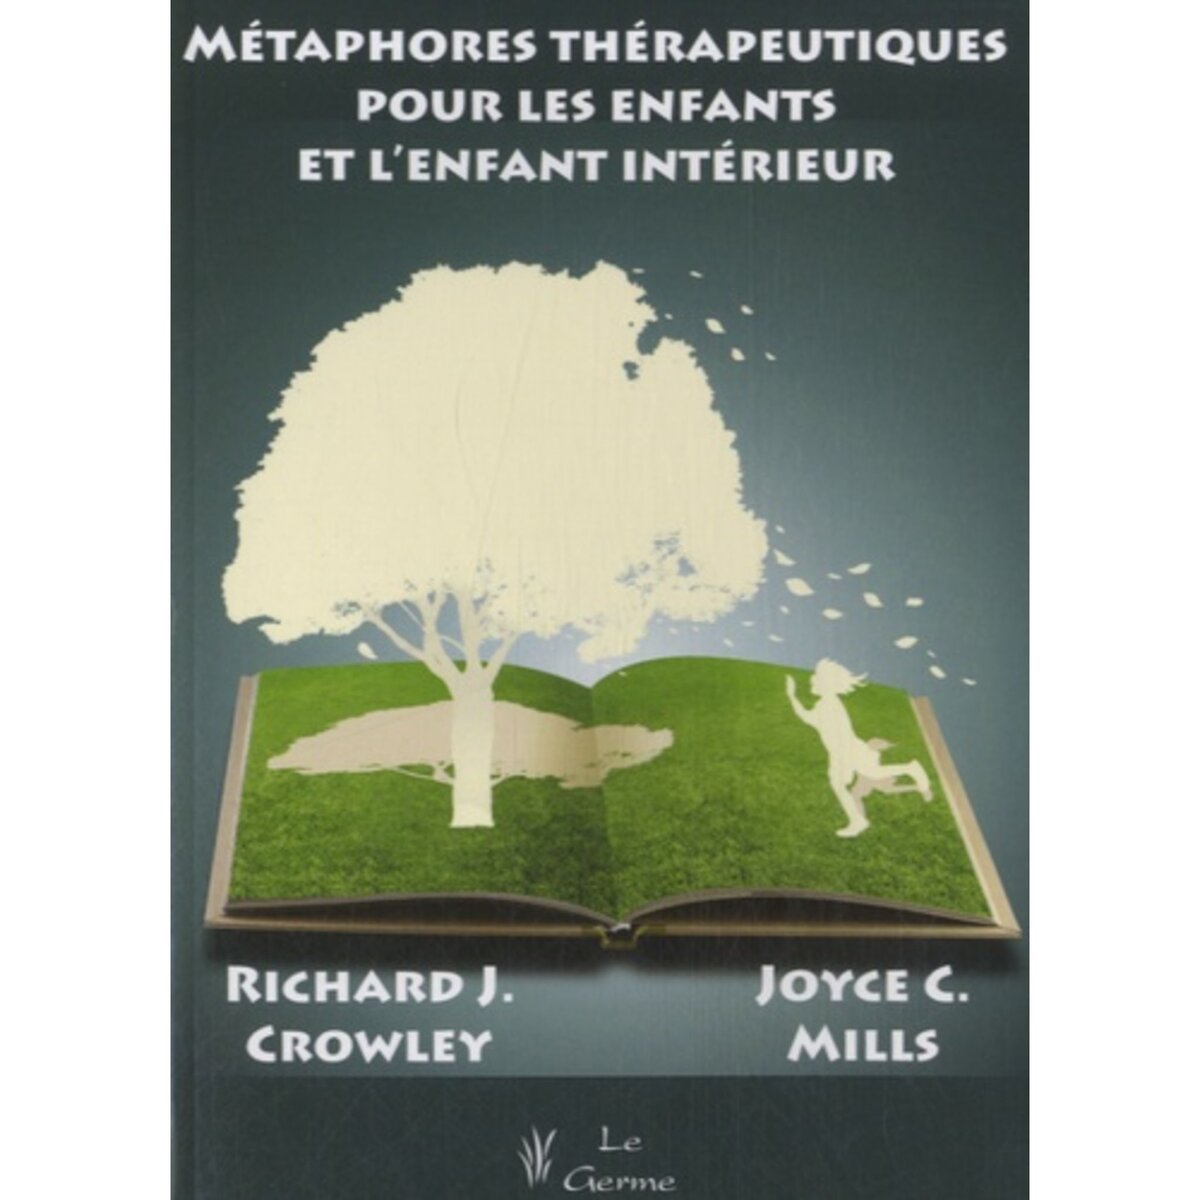  METAPHORES THERAPEUTIQUES POUR LES ENFANTS ET L'ENFANT INTERIEUR, Mills Joyce C.